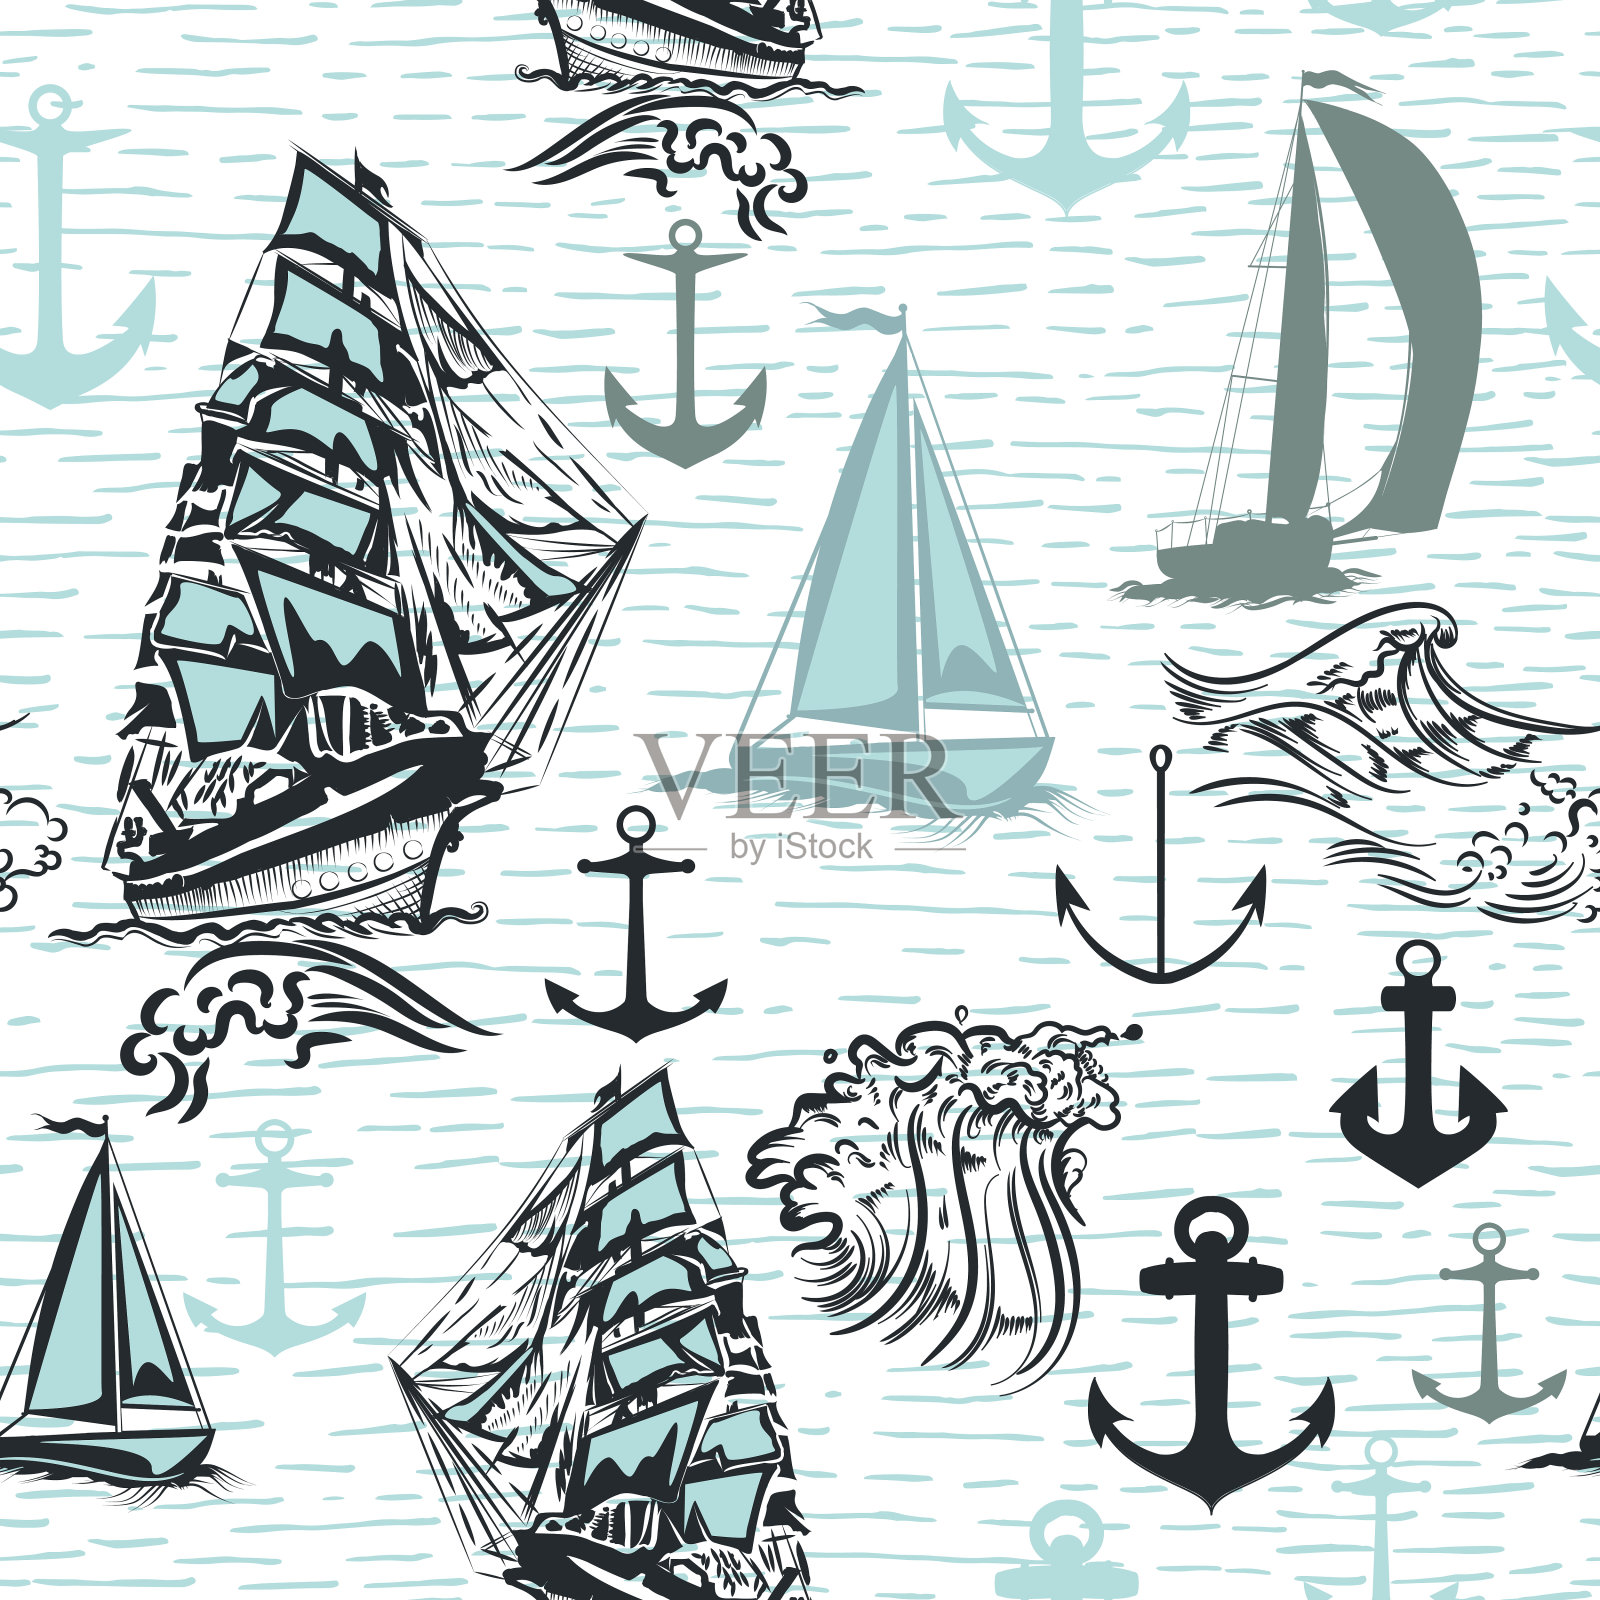 简单的夏季壁纸图案与船的设计插画图片素材